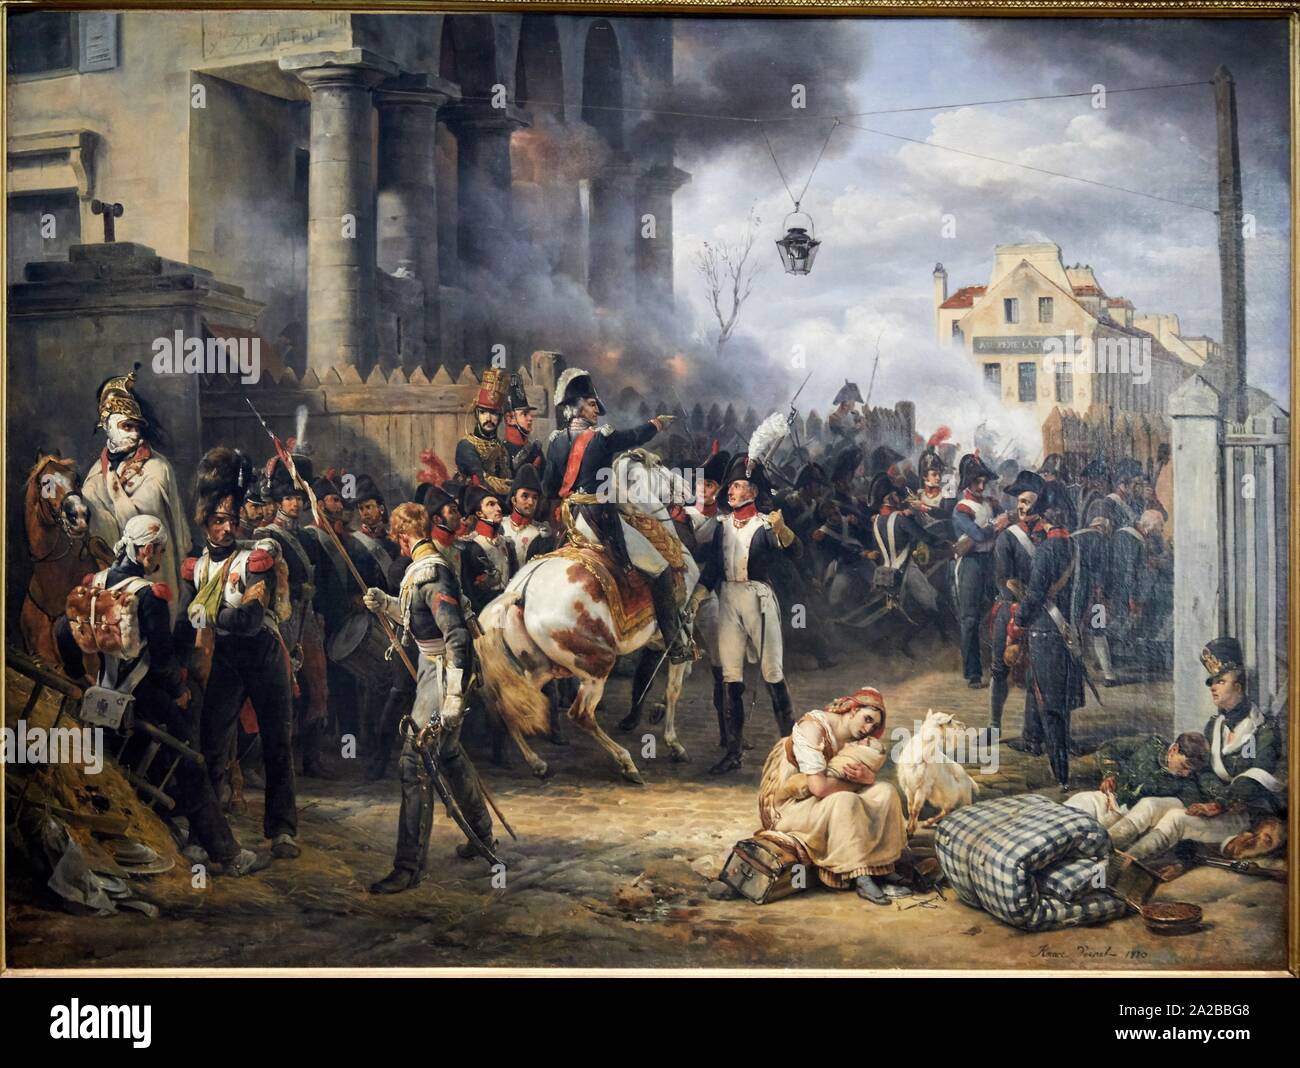 '''La barrière de Clichy. Défense de Paris, le 30 mars 1814'', 1820, Horace Vernet, Petit Palais Musée des Beaux Arts de la Ville de Paris, France, Stock Photo